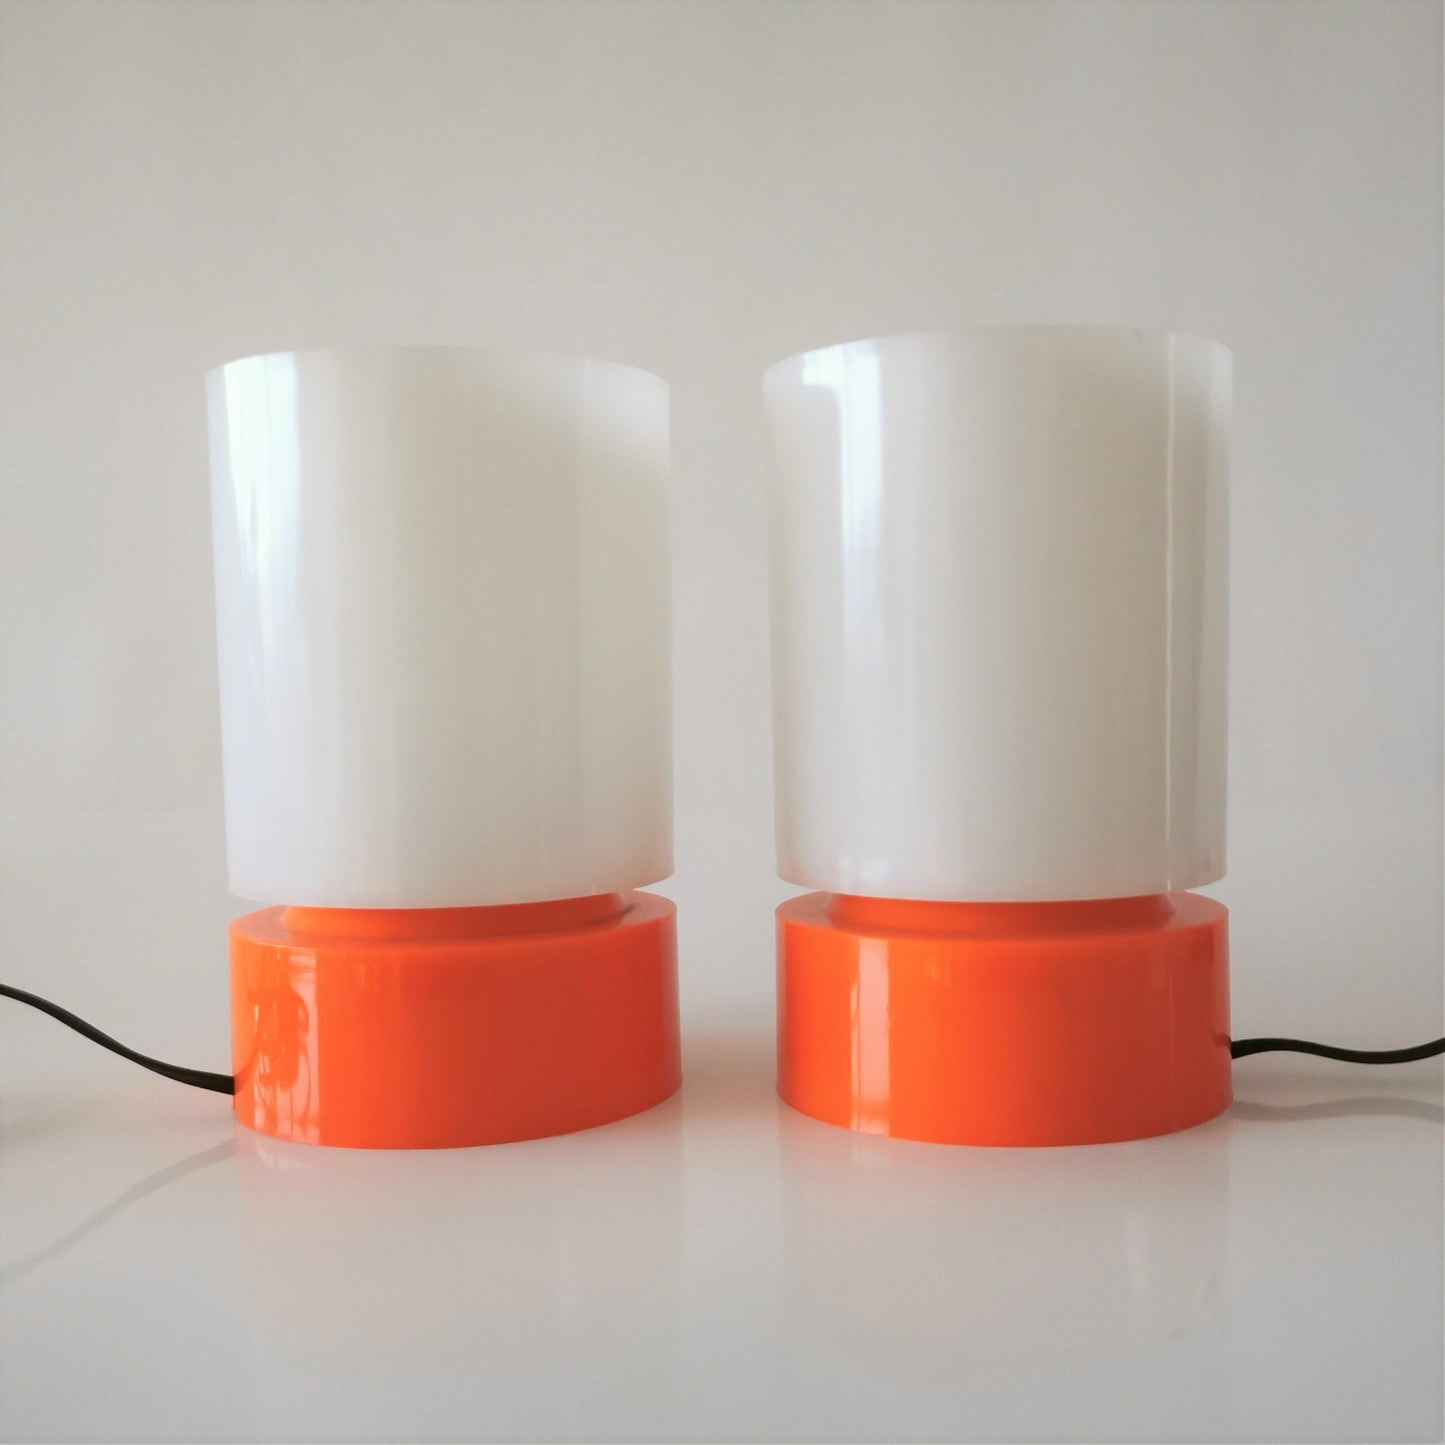 Zwei kleine Nachttischlampen aus Acrylglas Italien um 1960 Lampen Made in Italy 